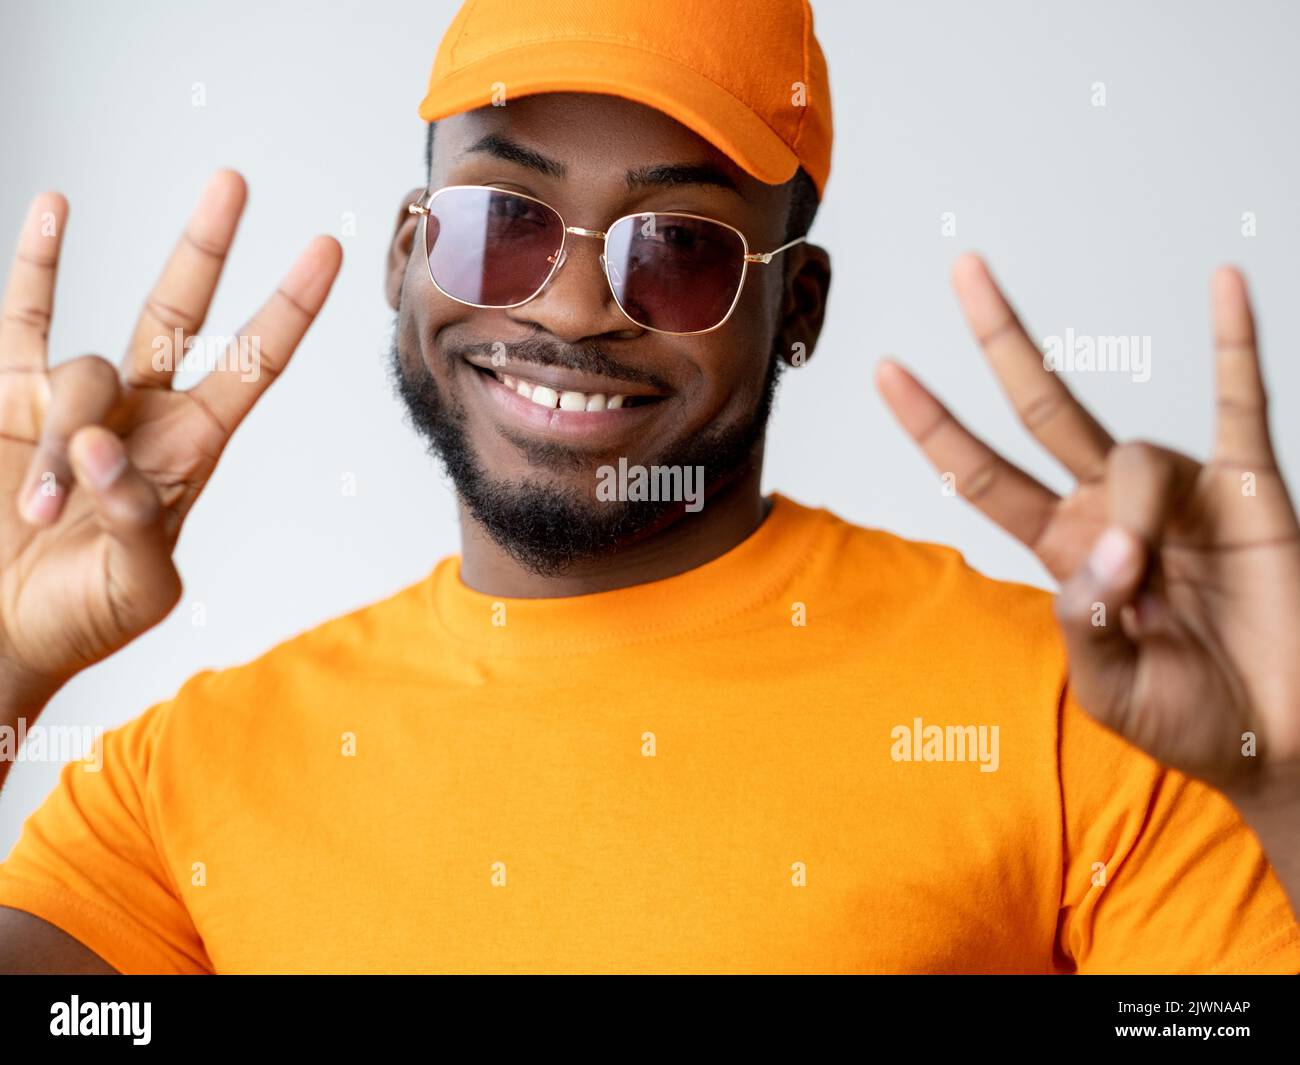 optique mode africain homme lunettes de soleil orange Banque D'Images